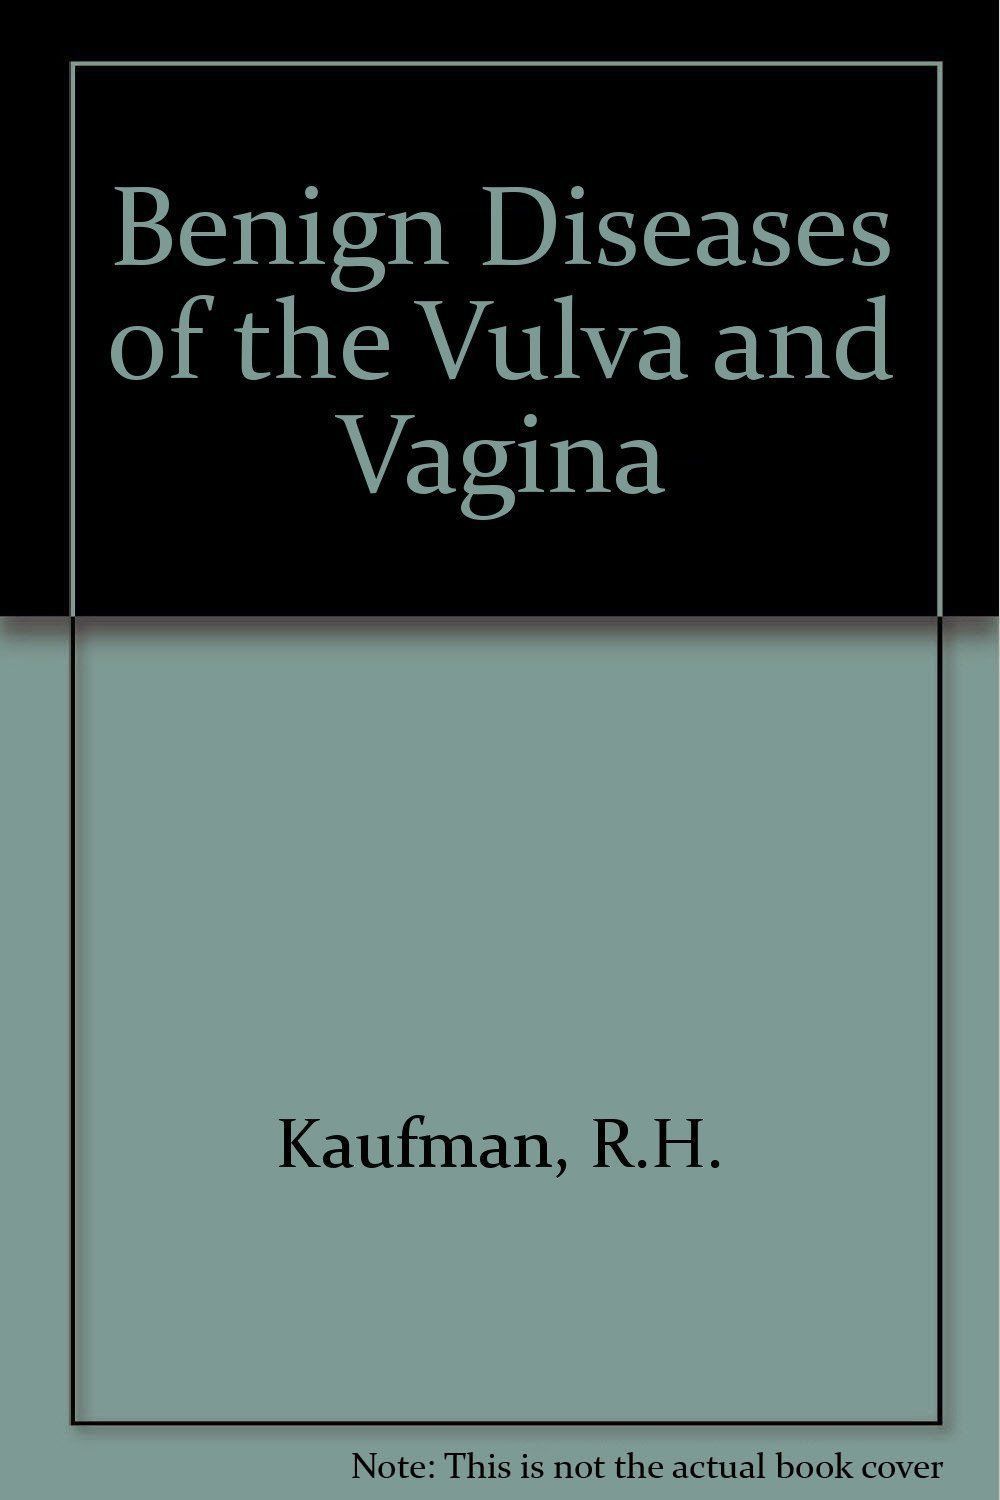 Darth V. reccomend Benign diseases of the vulva and vagina